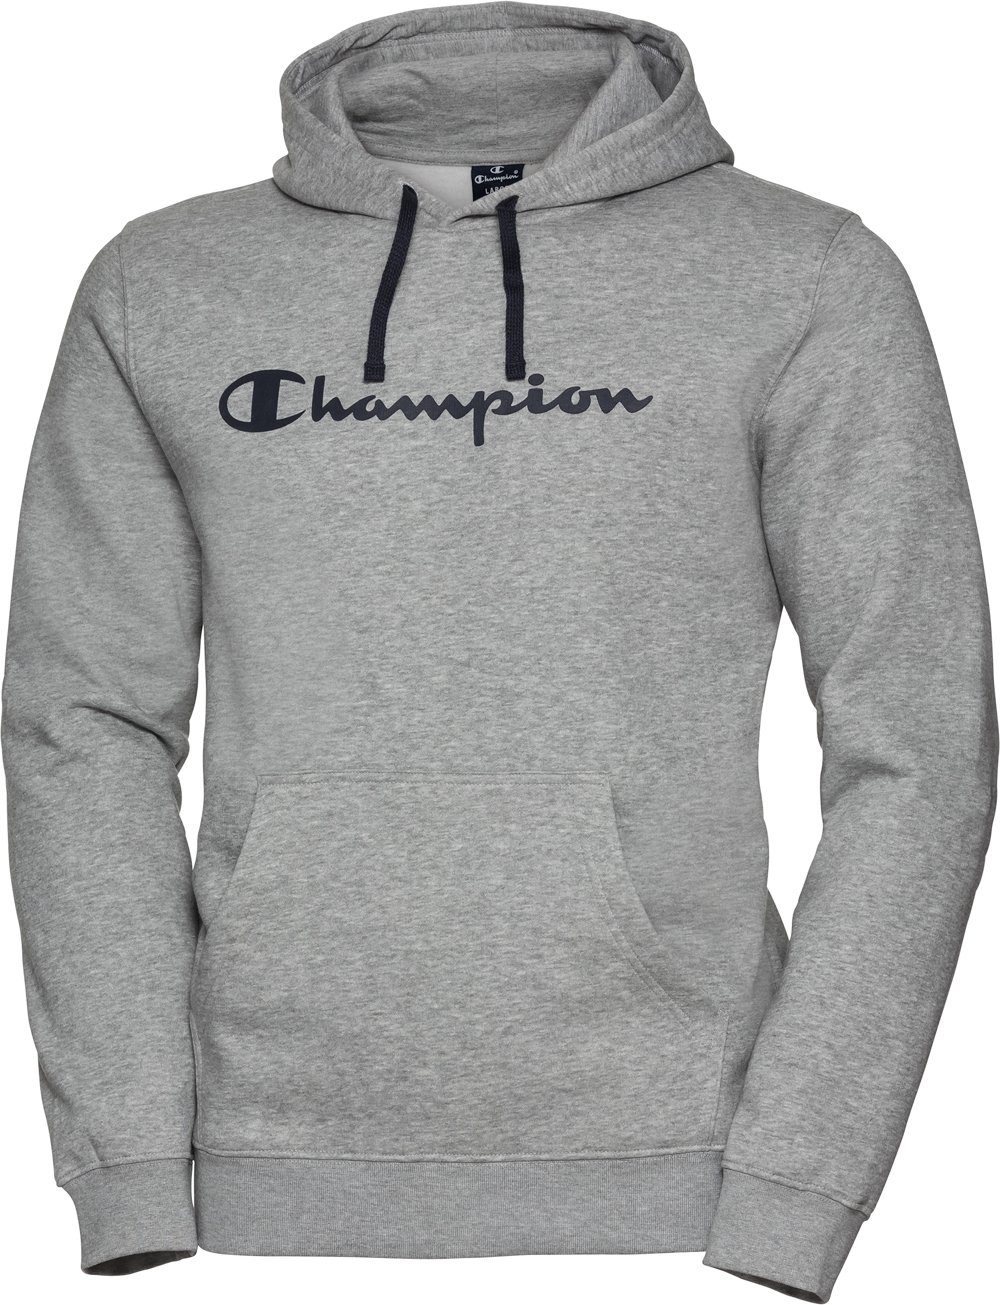 Champion Kapuzensweatshirt für Damen und Herren grau